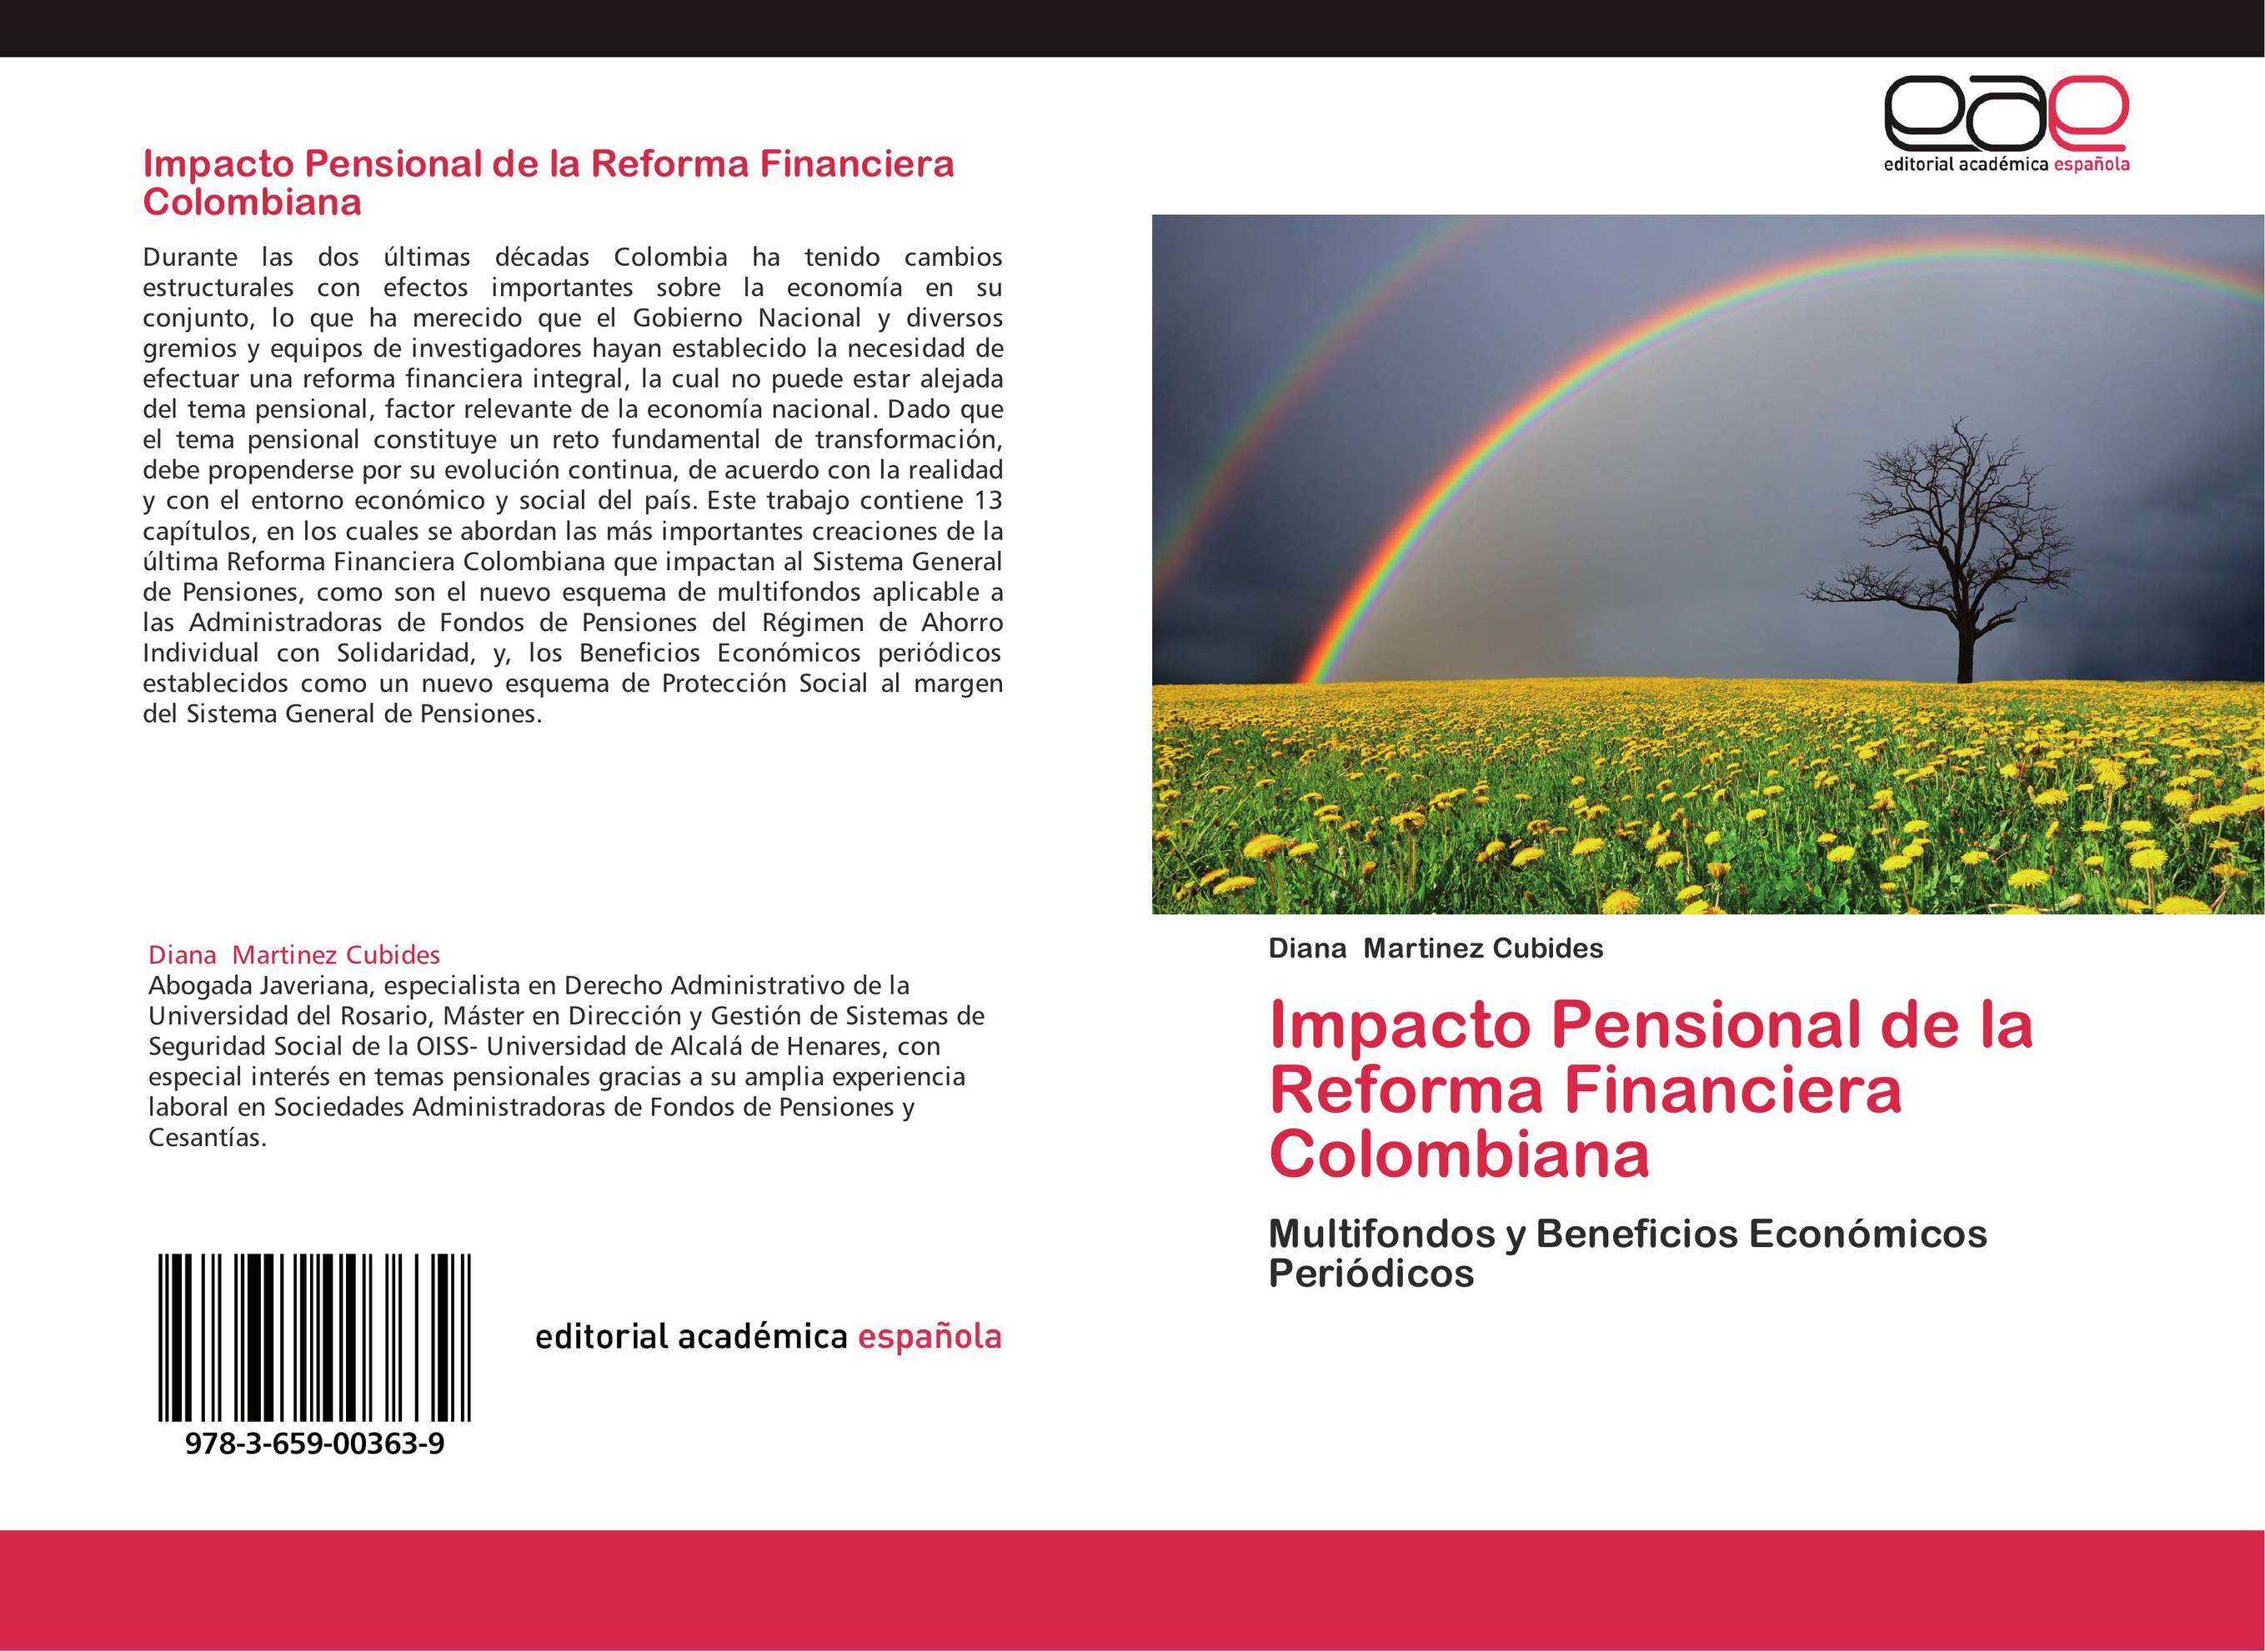 Impacto Pensional de la Reforma Financiera Colombiana